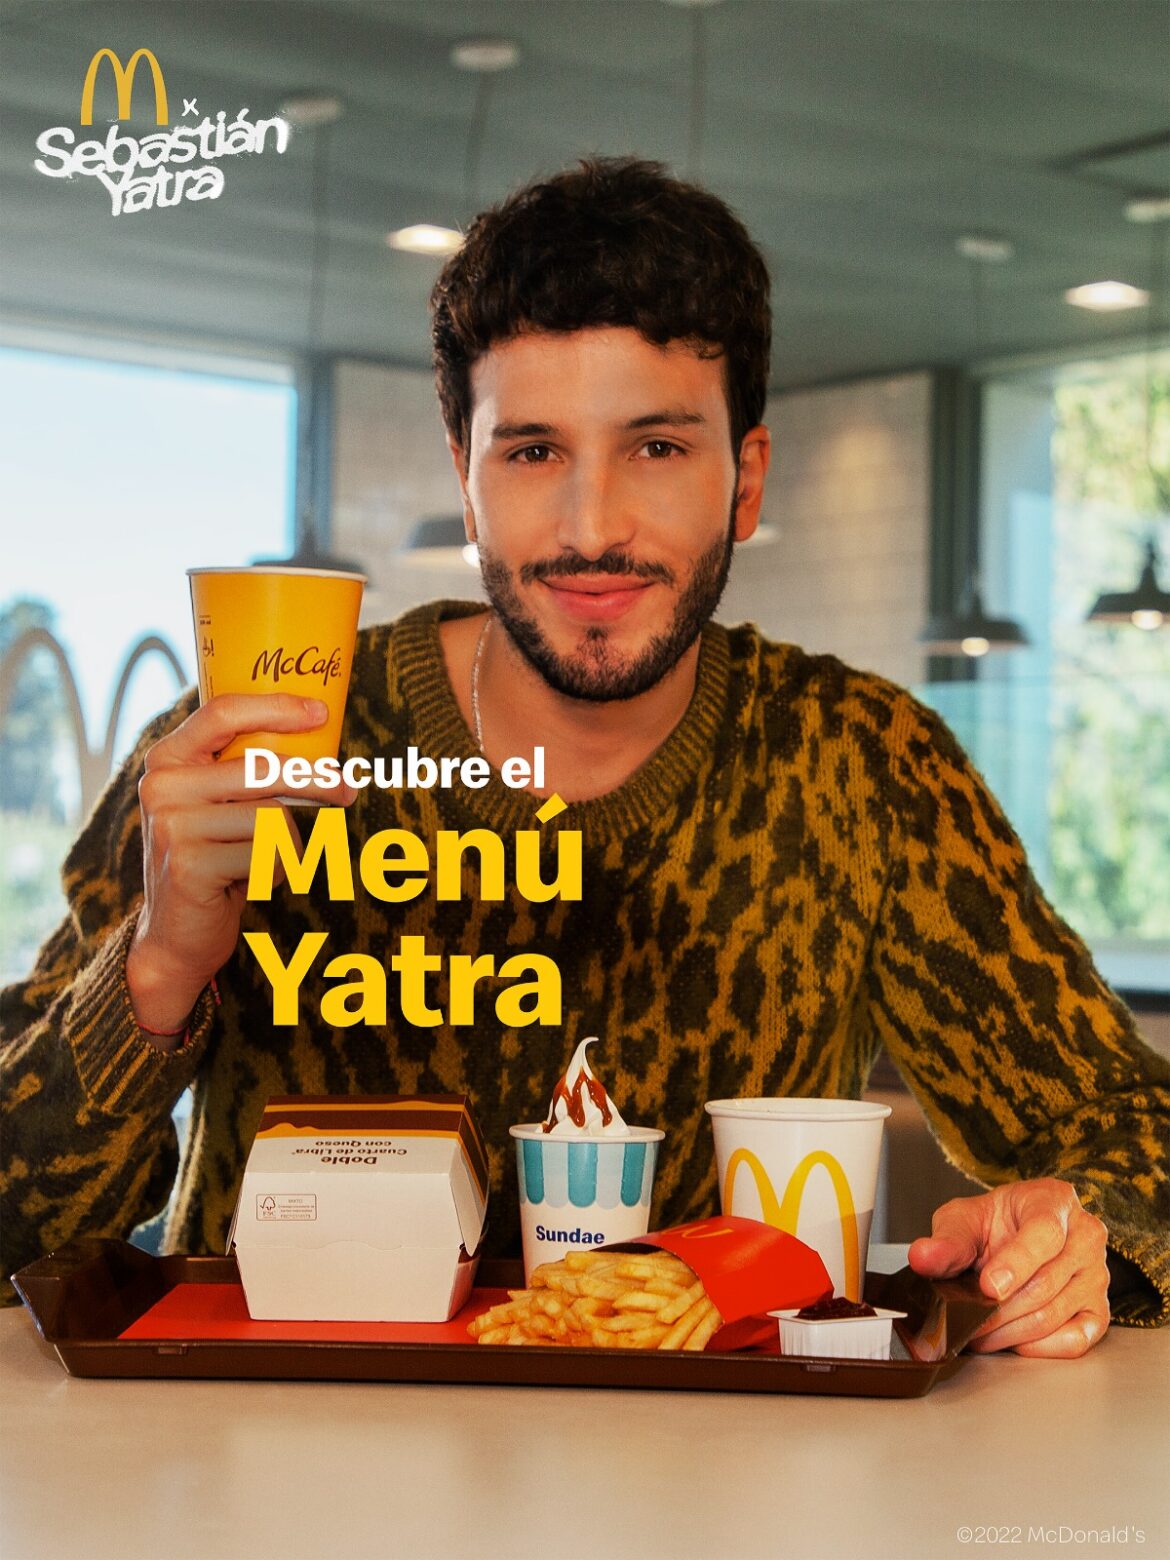 Llegó el combo favorito de Sebastián Yatra a McDonald’s